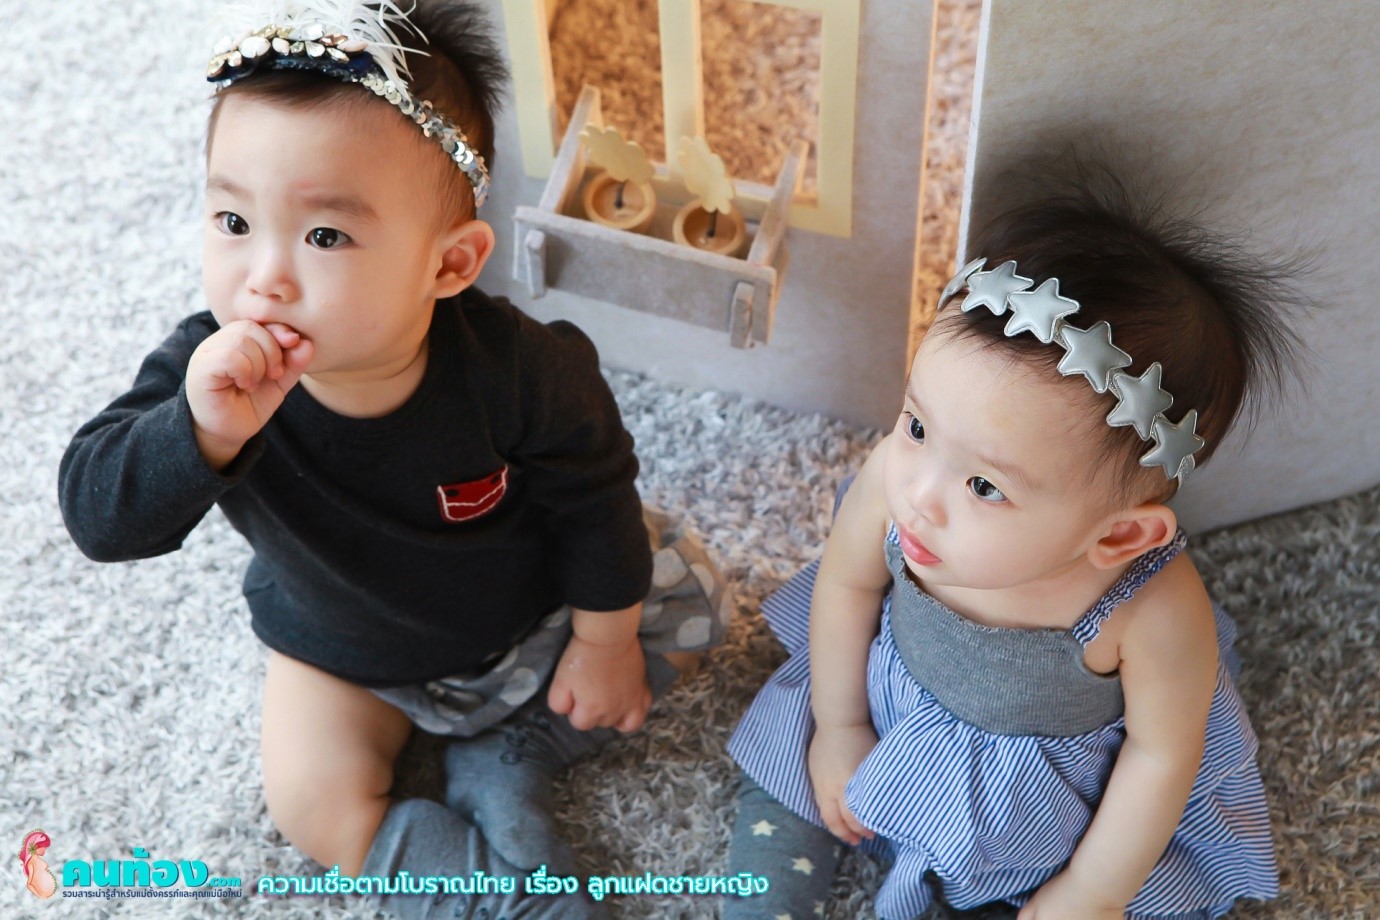 ลูกแฝดชายหญิง กับความเชื่อตามโบราณไทย ที่คนรุ่นใหม่ต้องรู้